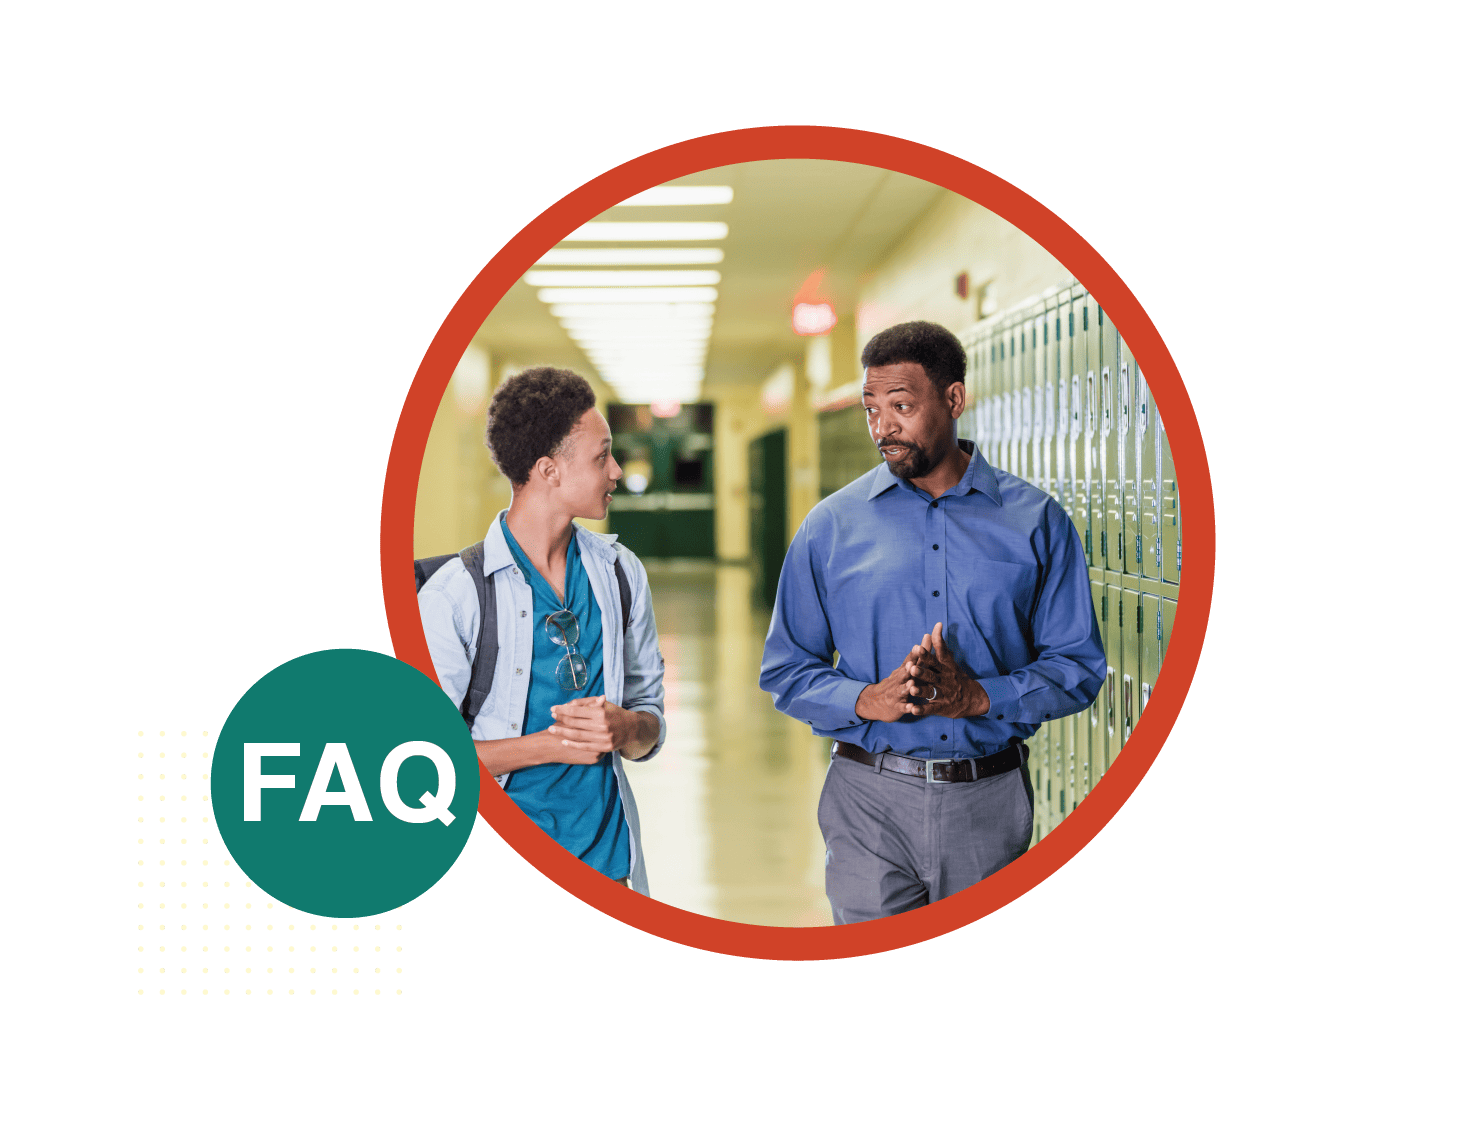 FAQ - Student talking to teacher